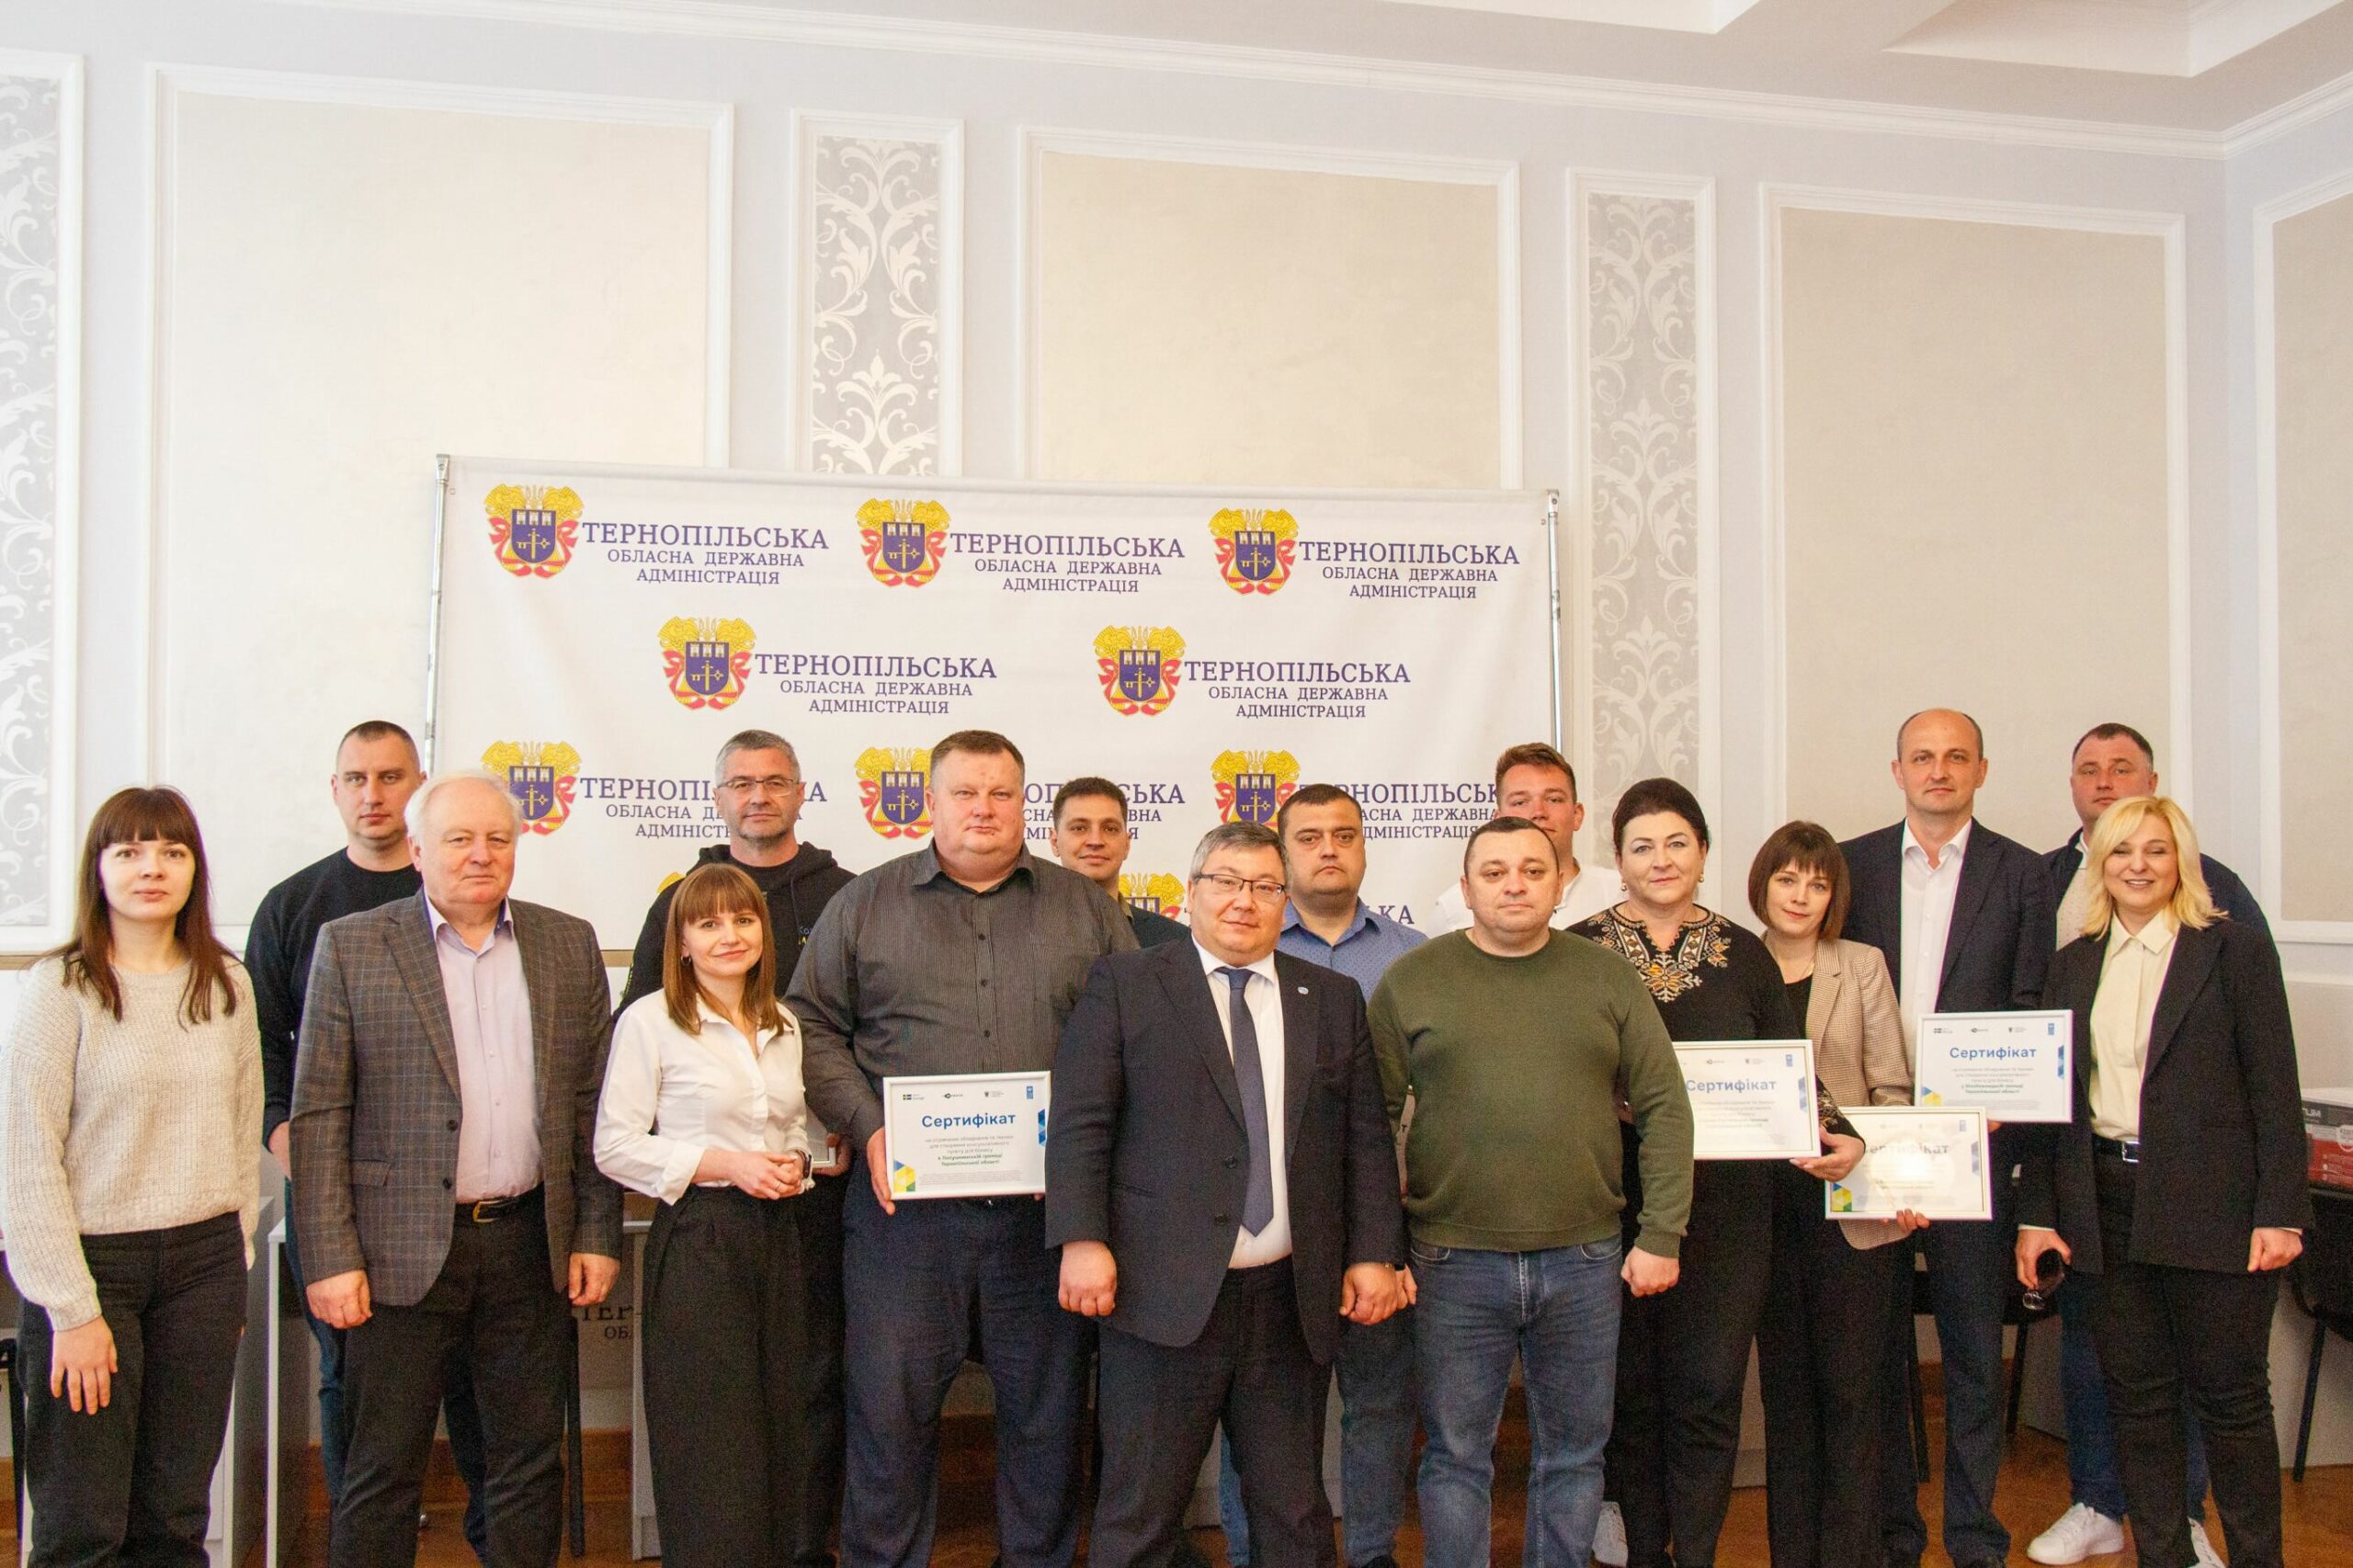 Вісім громад Тернопільщини отримали обладнання для нових консультаційних пунктів для бізнесу